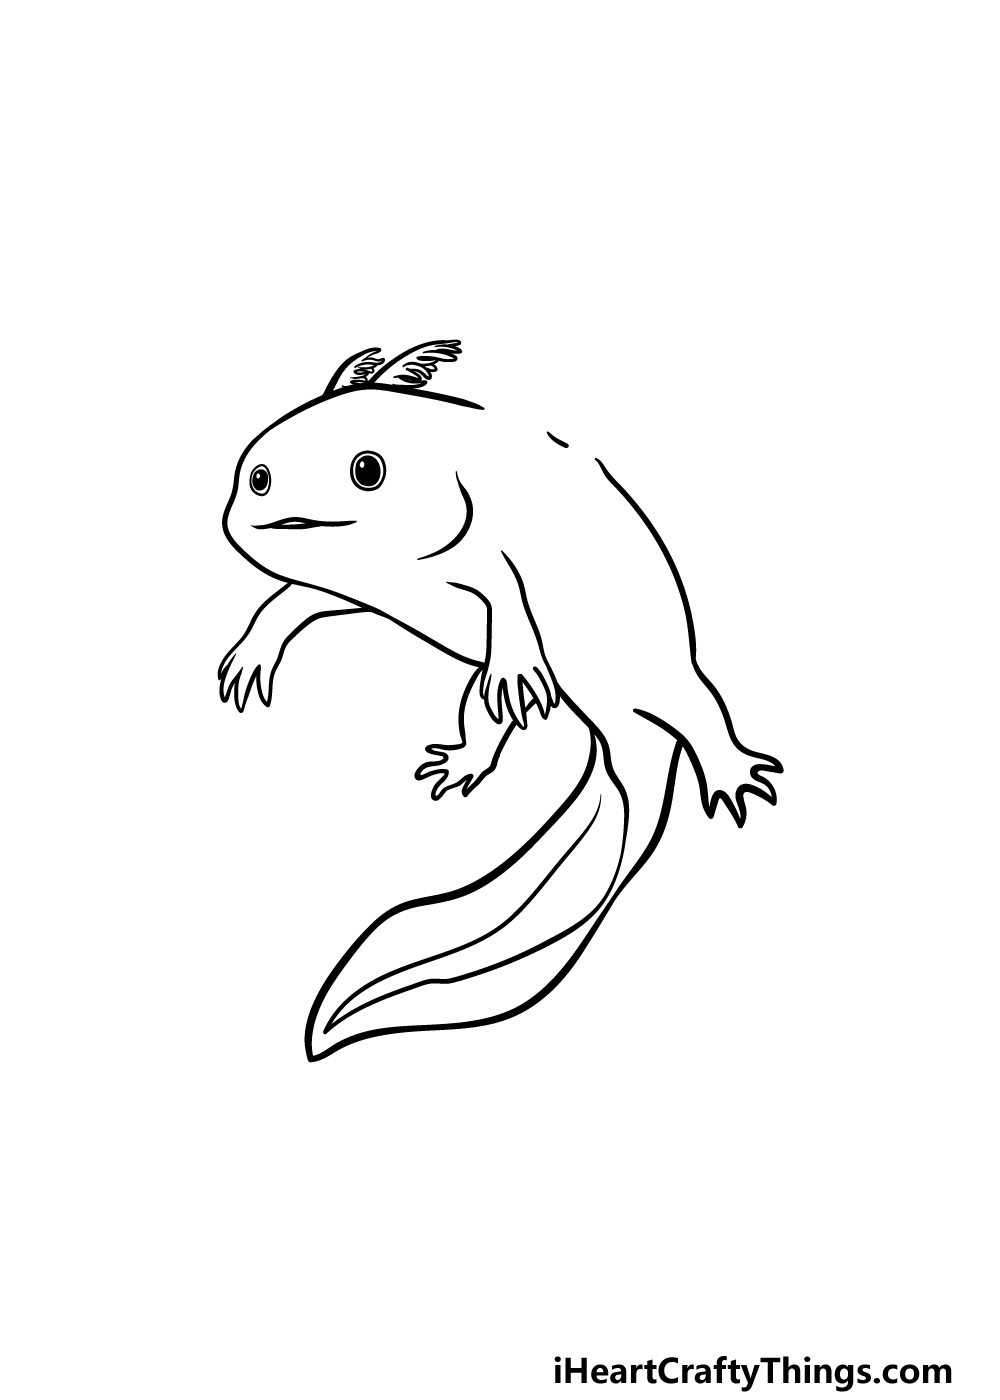 Drawing Axolotl step 4